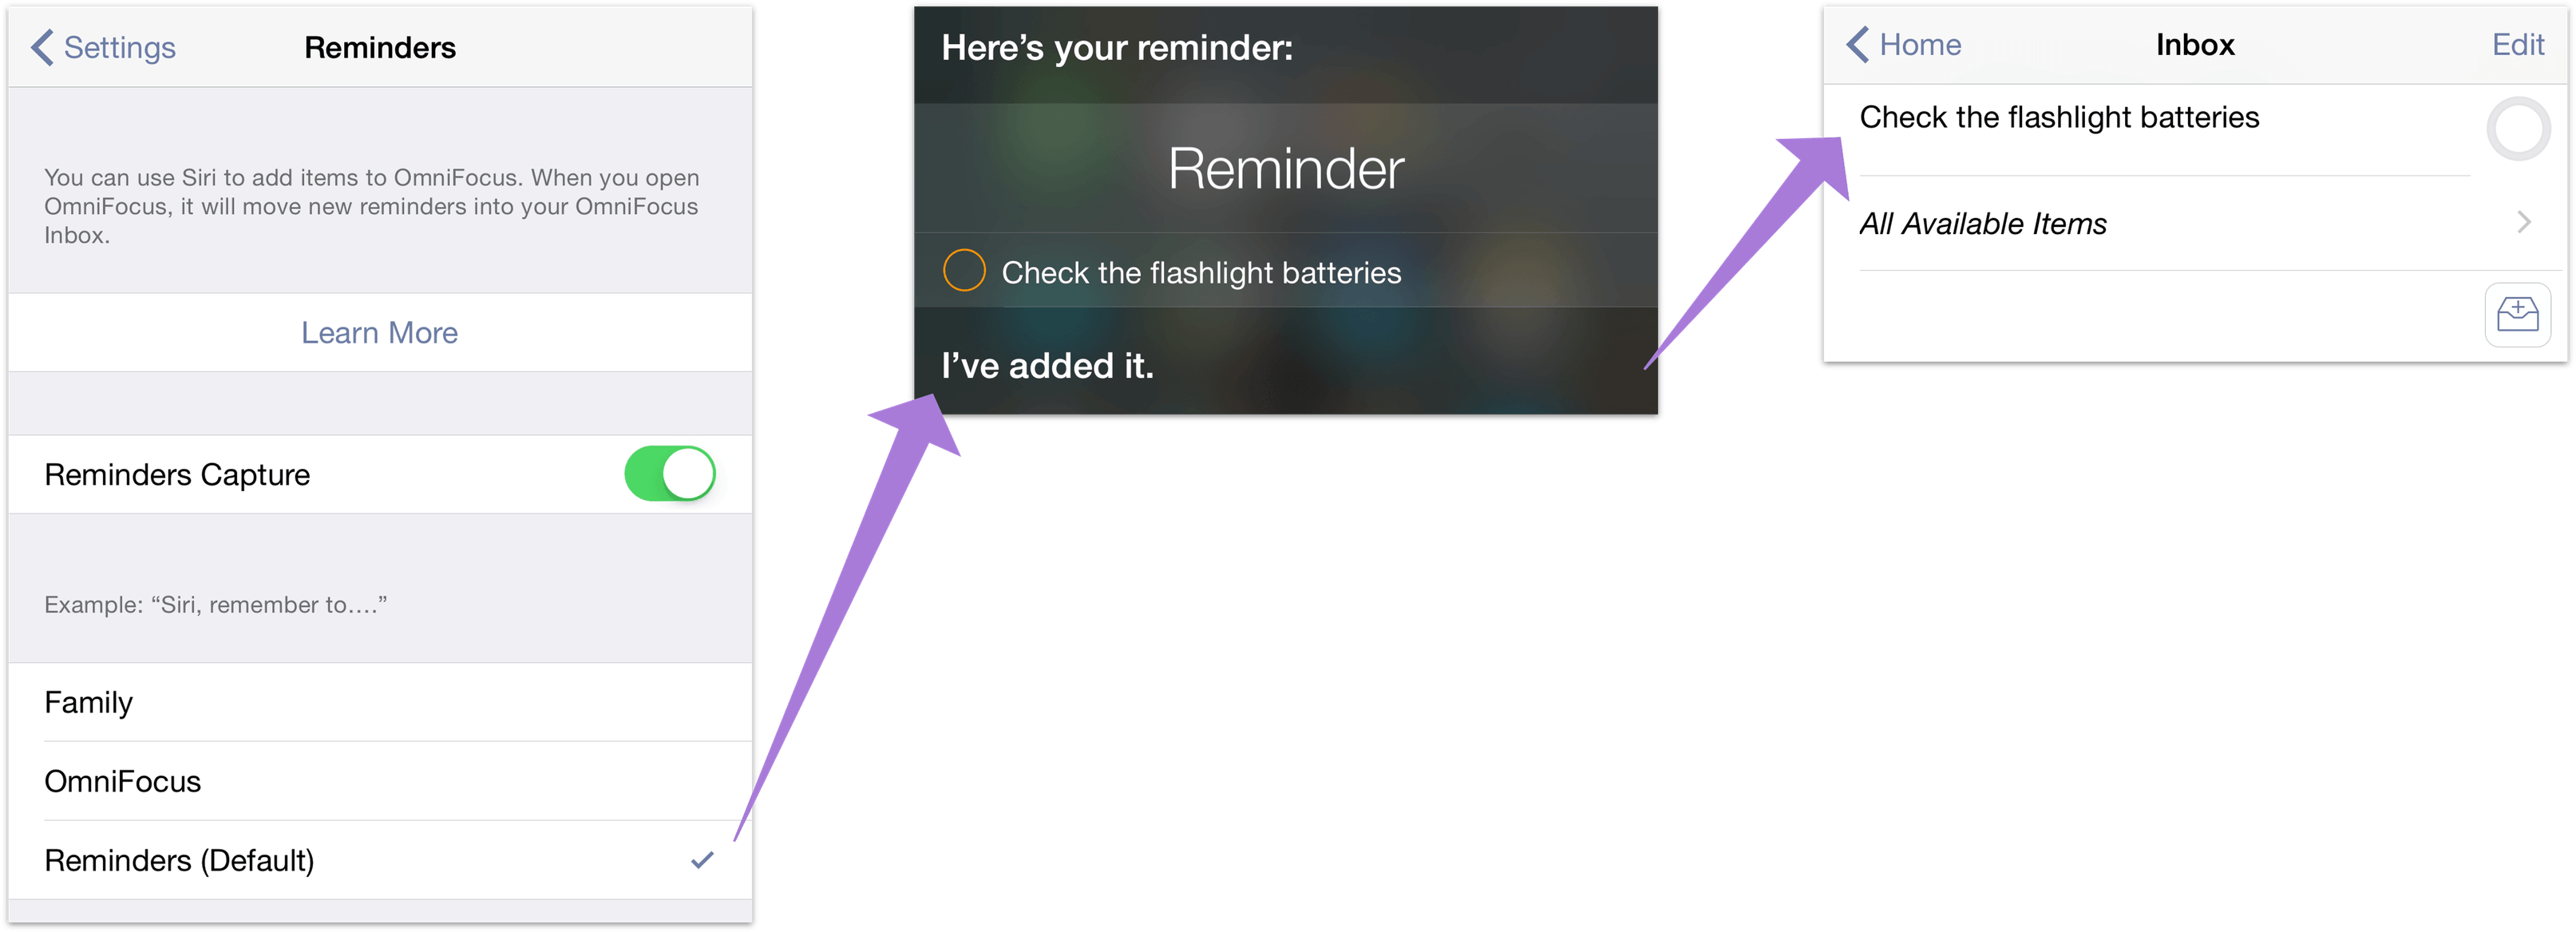 Configuration de la capture de rappels et ajout d'éléments à votre boîte de réception OmniFocus avec Siri.